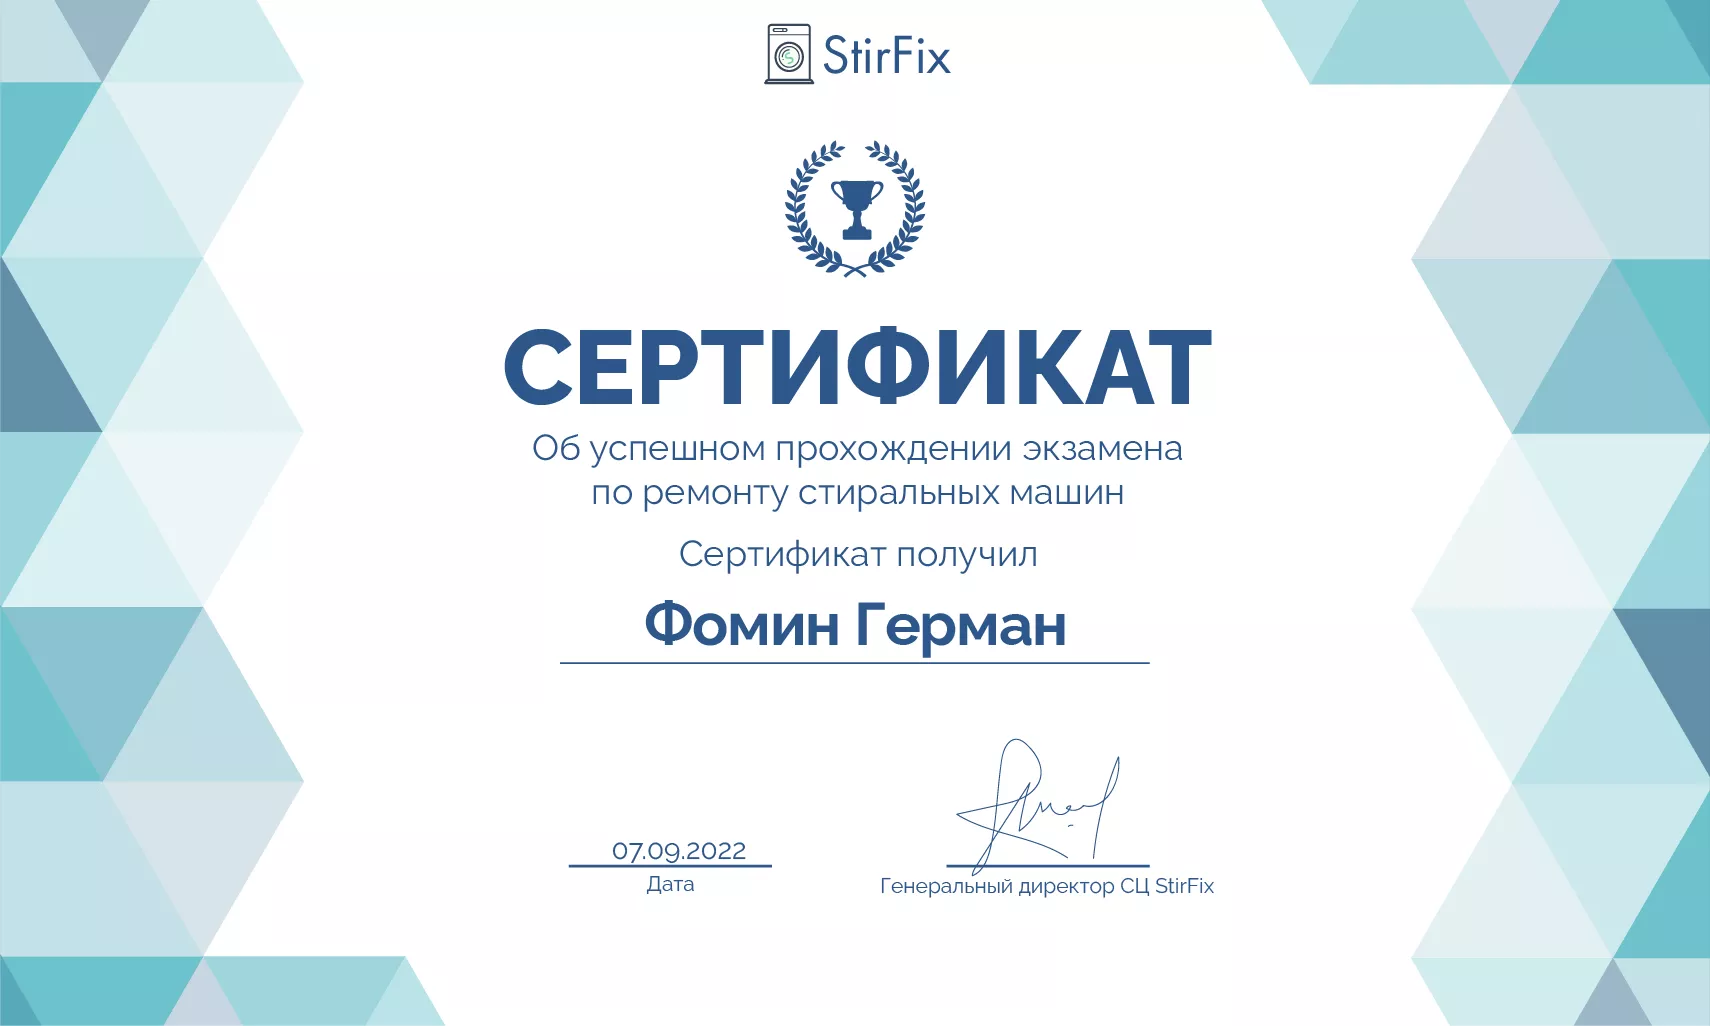 Фомин Герман сертификат мастера по ремонту стиральных машин